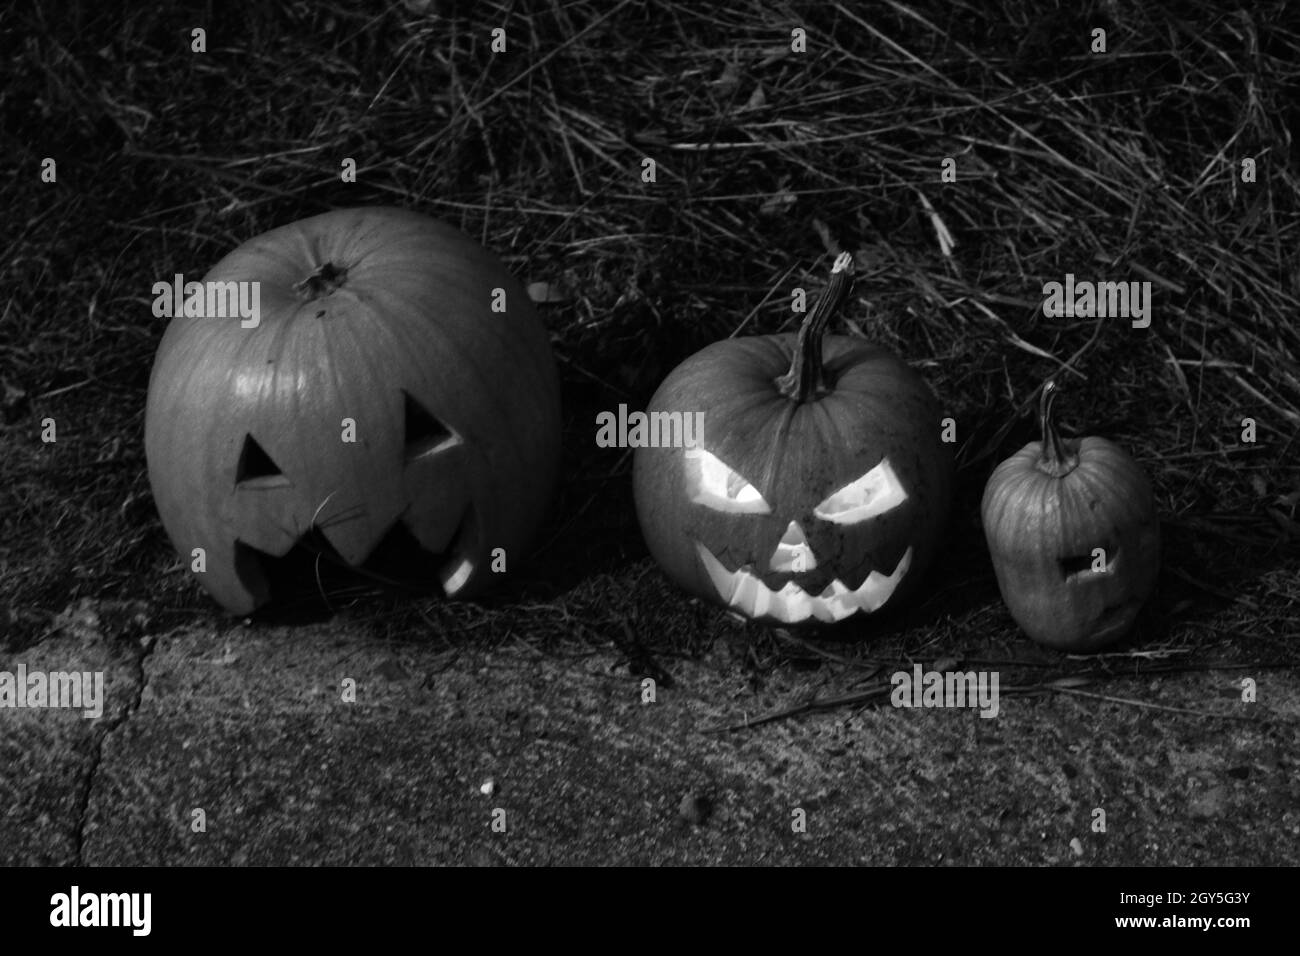 Primer plano escala de grises de calabazas decorativas para Halloween en el suelo Foto de stock